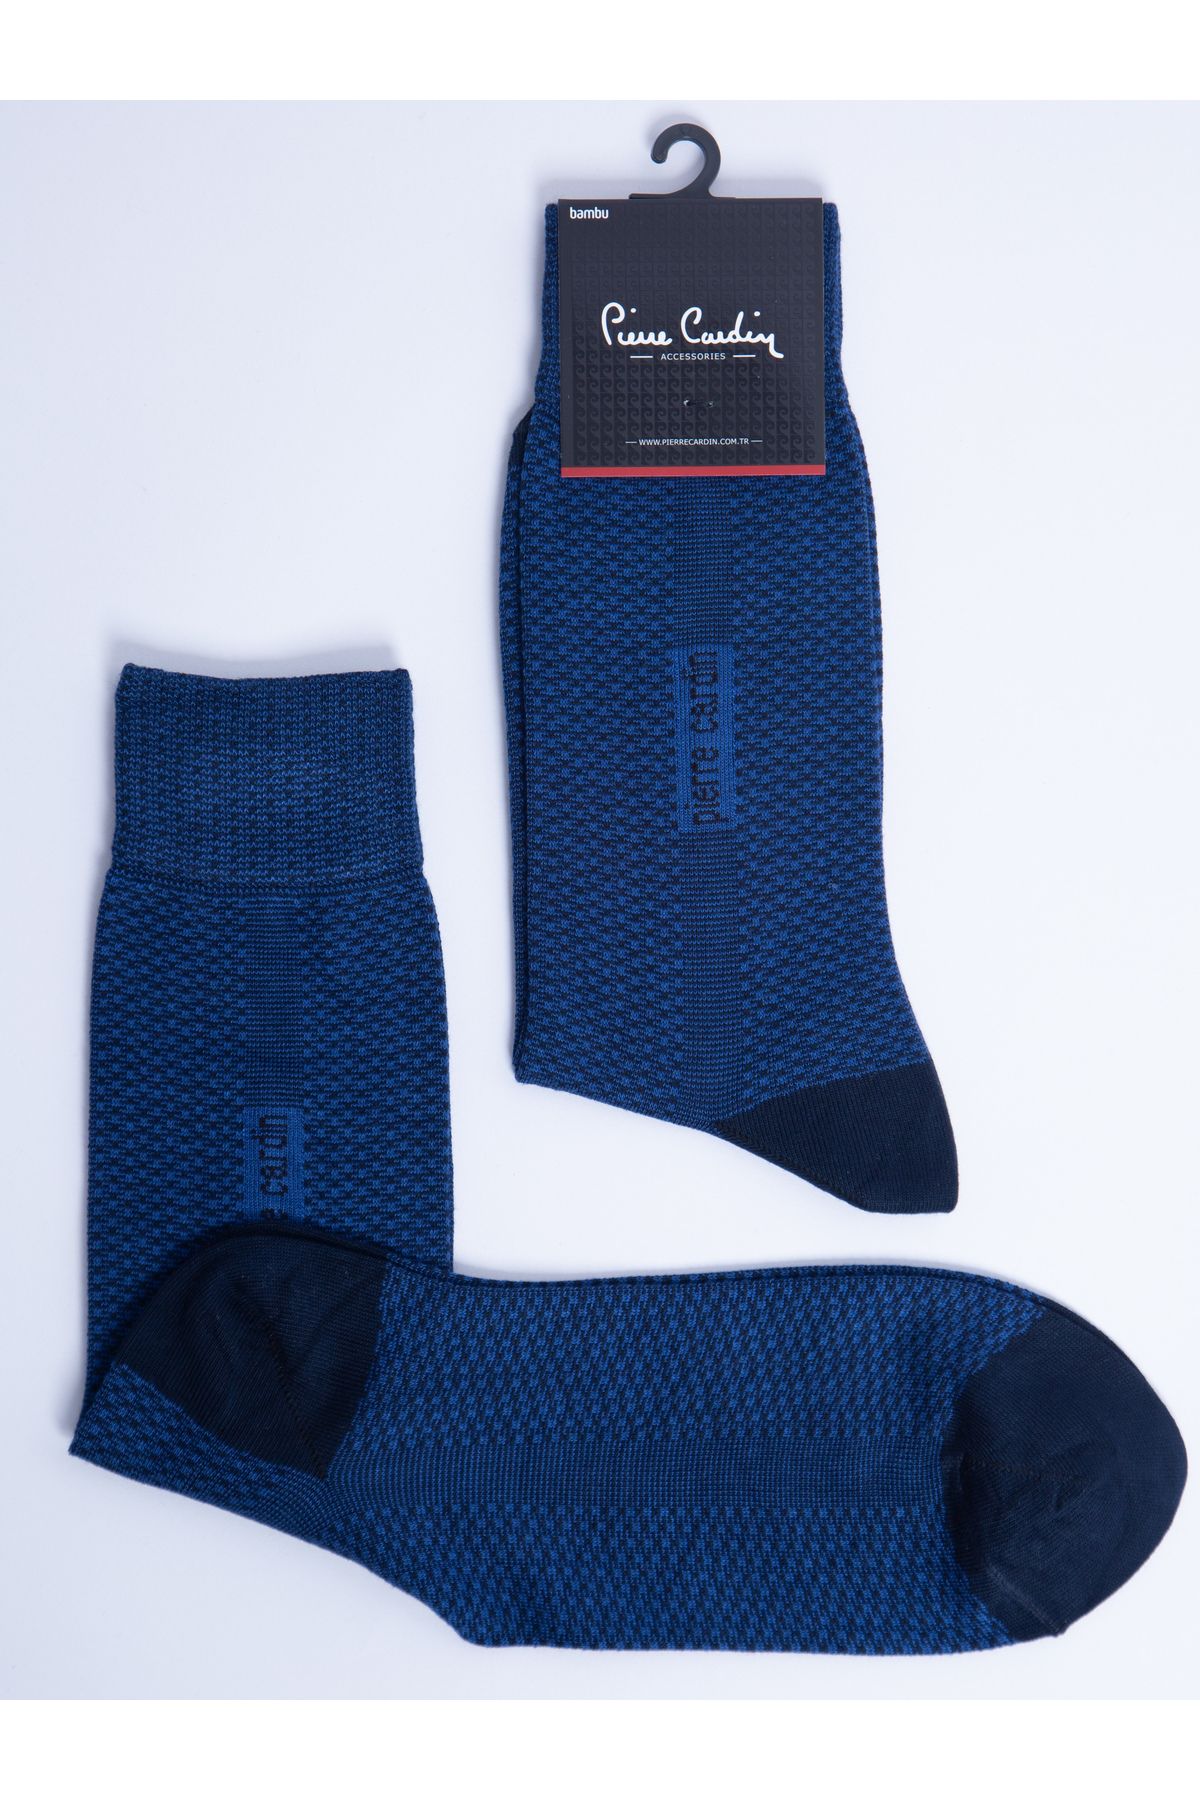 Pierre Cardin Bambu 6’lı Erkek Uzun Soket Çorap Pc-:825